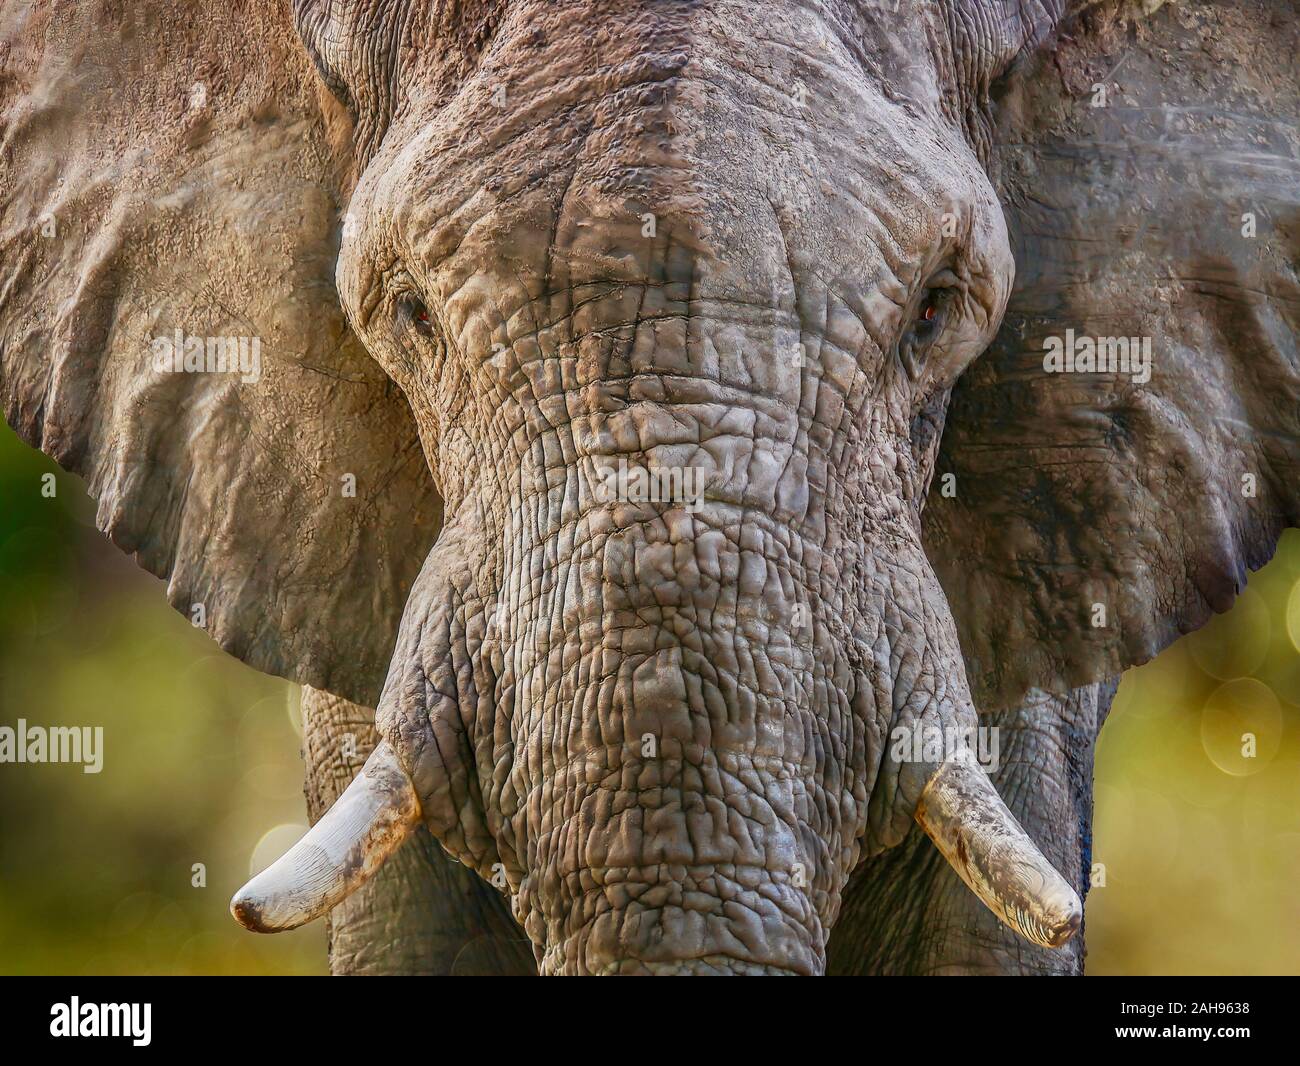 Eine Nahaufnahme Porträt einer Großen Afrikanischen Elefanten (Loxodonta africana) direkt in die Kamera schaut, wie es näher Spaziergänge, Erstellen von Bewegungsunschärfe. Stockfoto